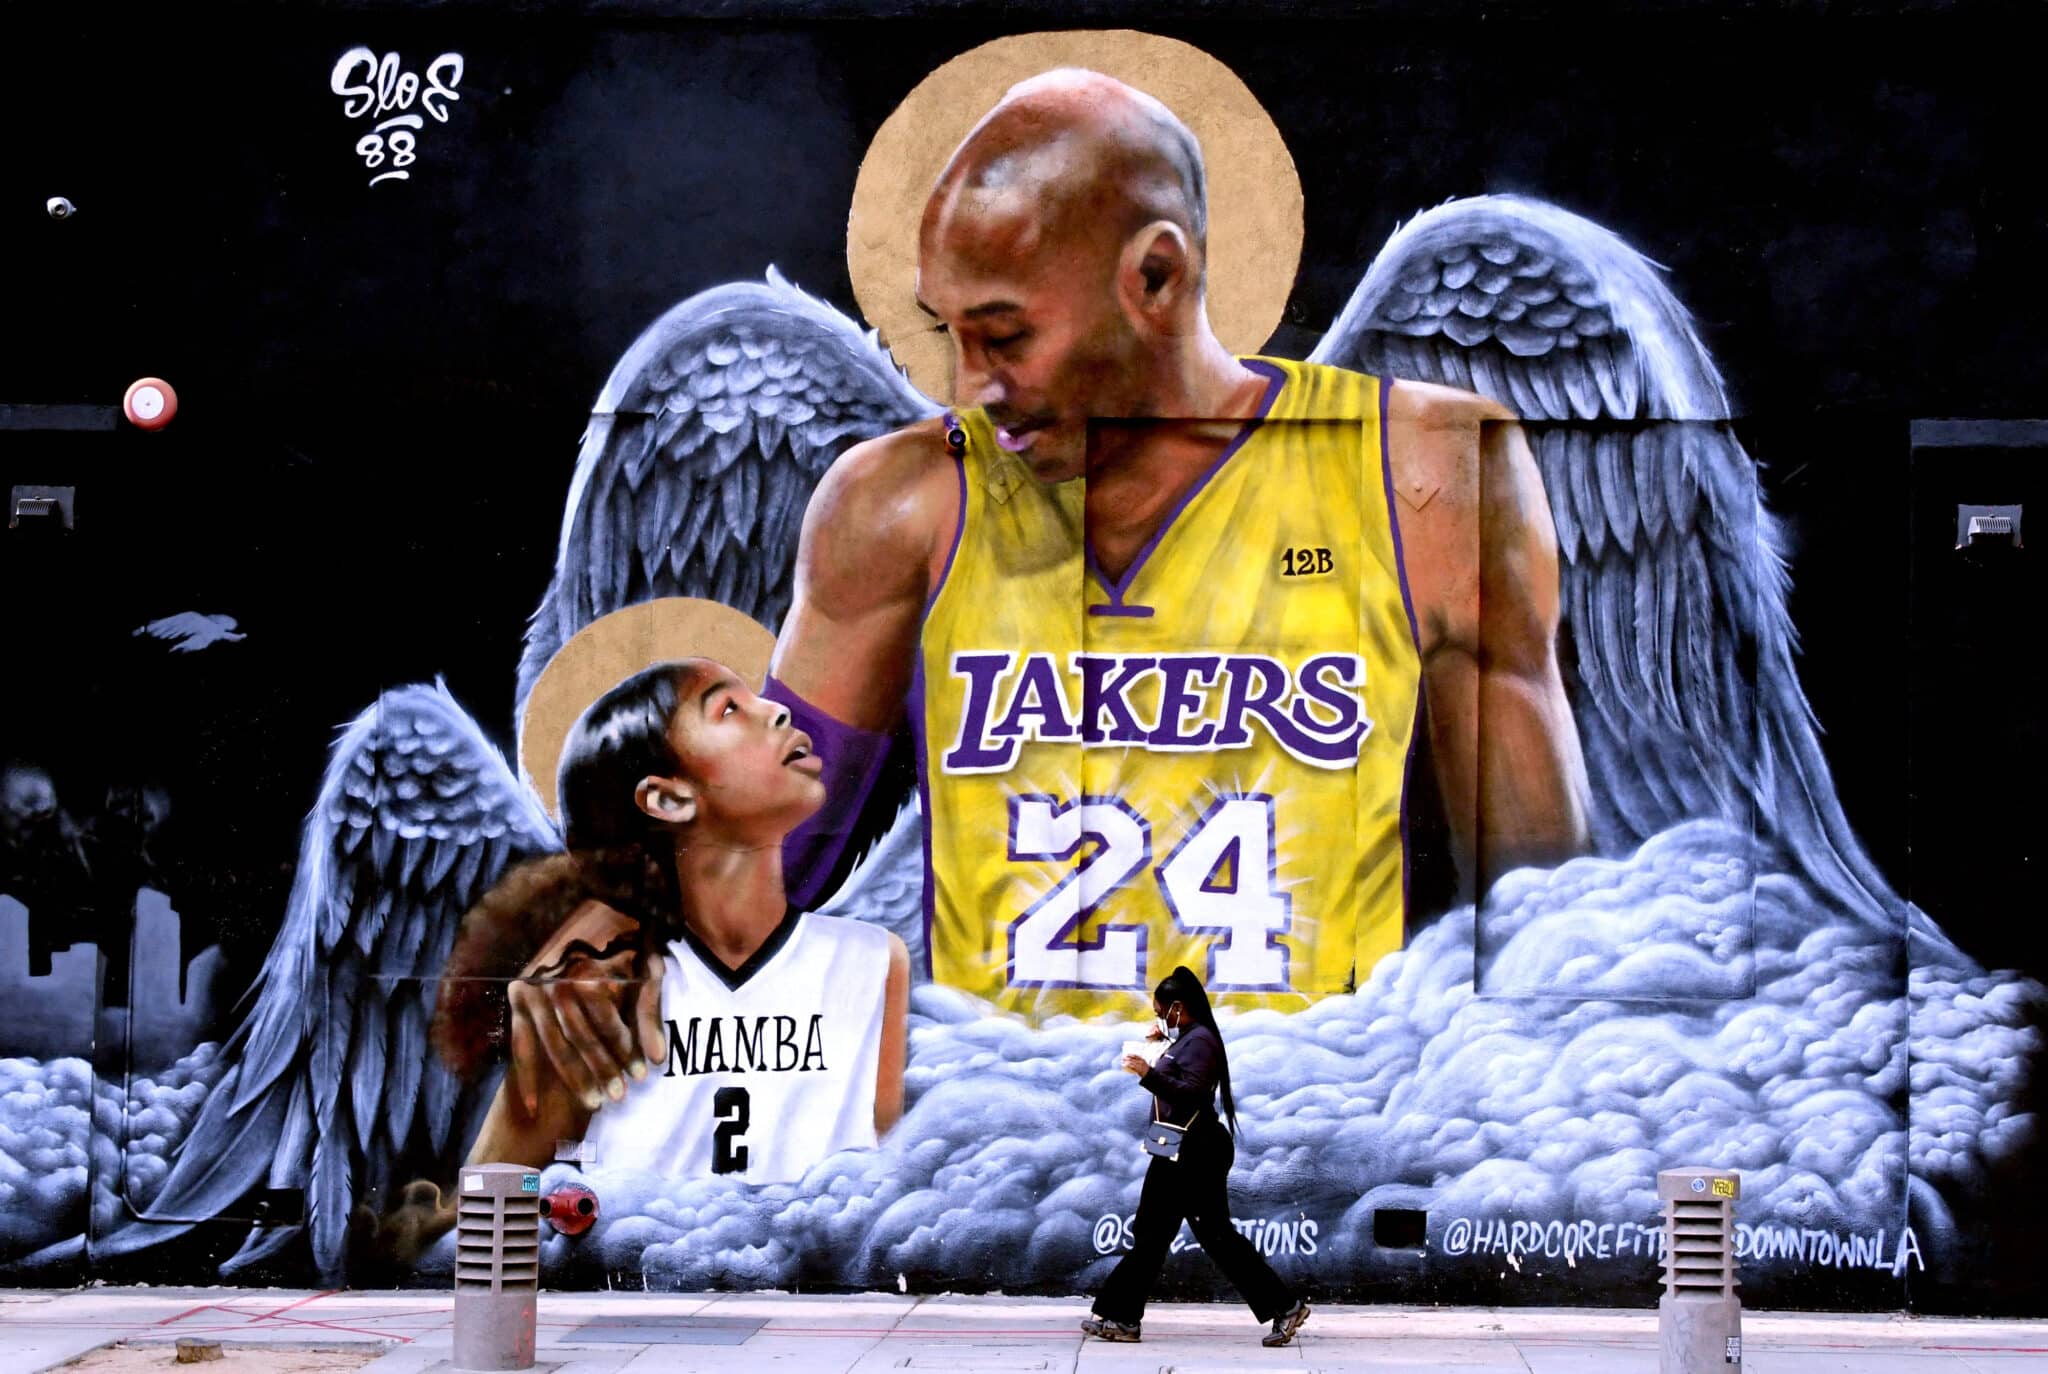 Se Cumplen 2 Años Del Día De La Muerte De Kobe Bryant La Tragedia Que Conmocionó Al Mundo